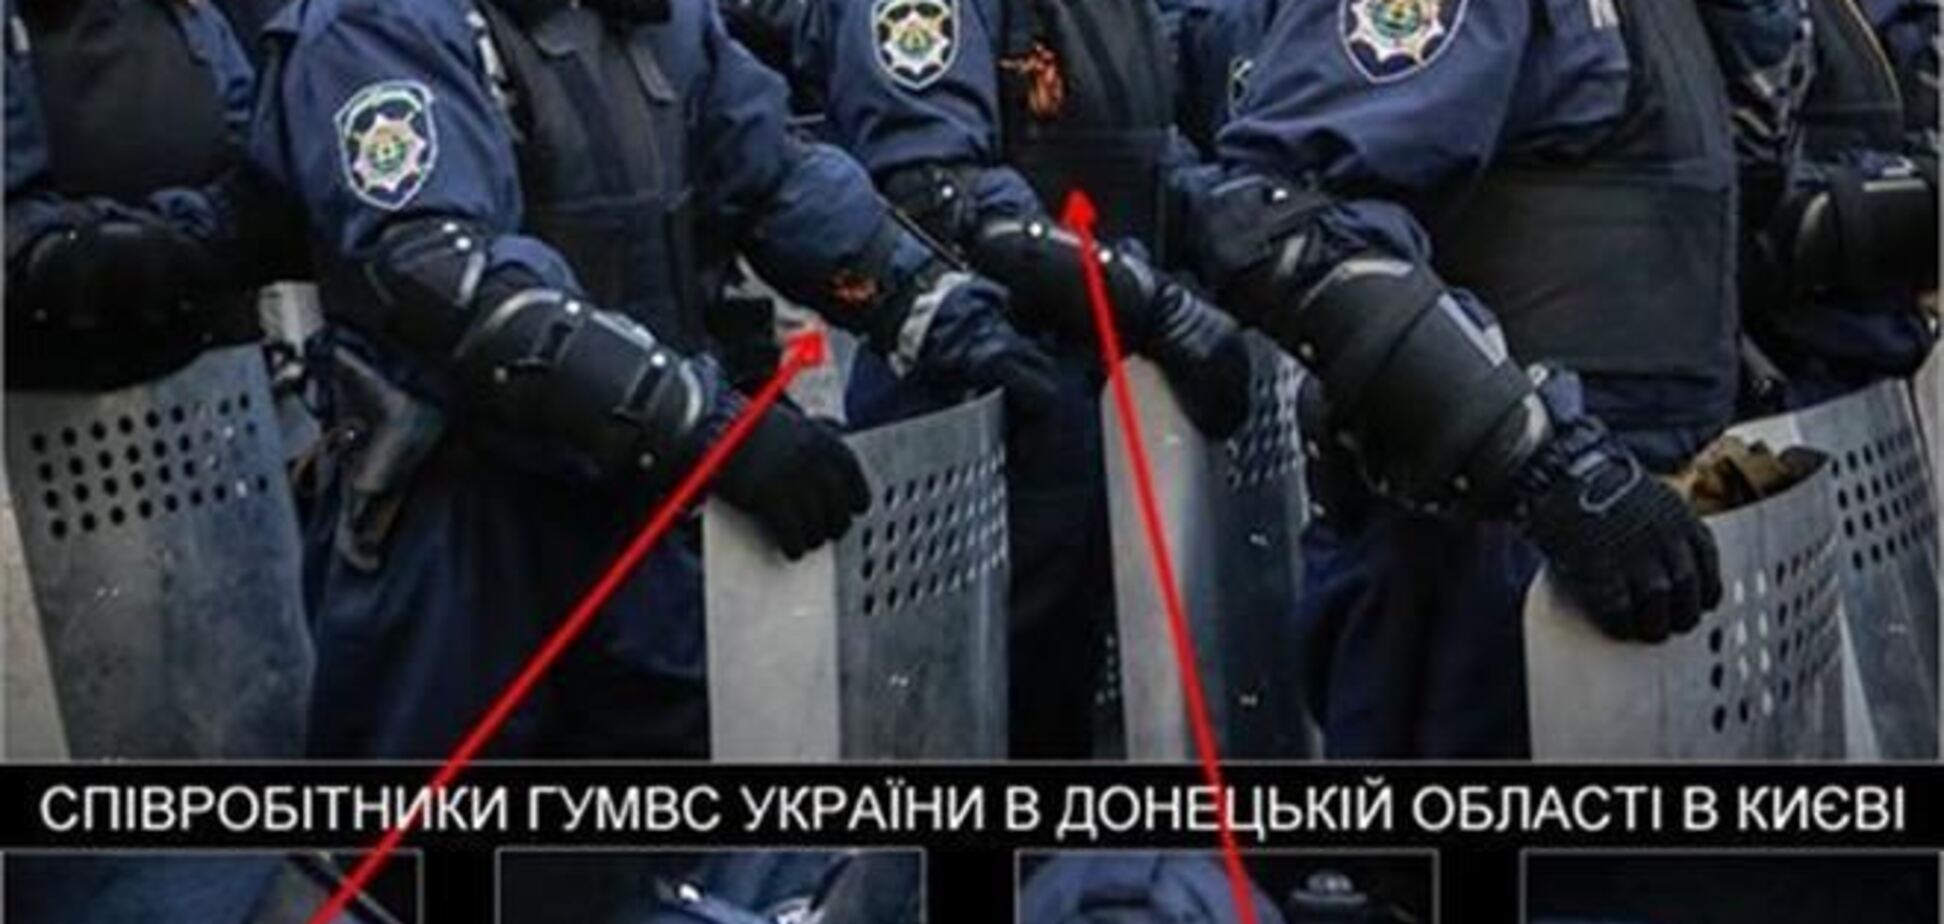 Донецкие милиционеры охраняют Верховную Раду